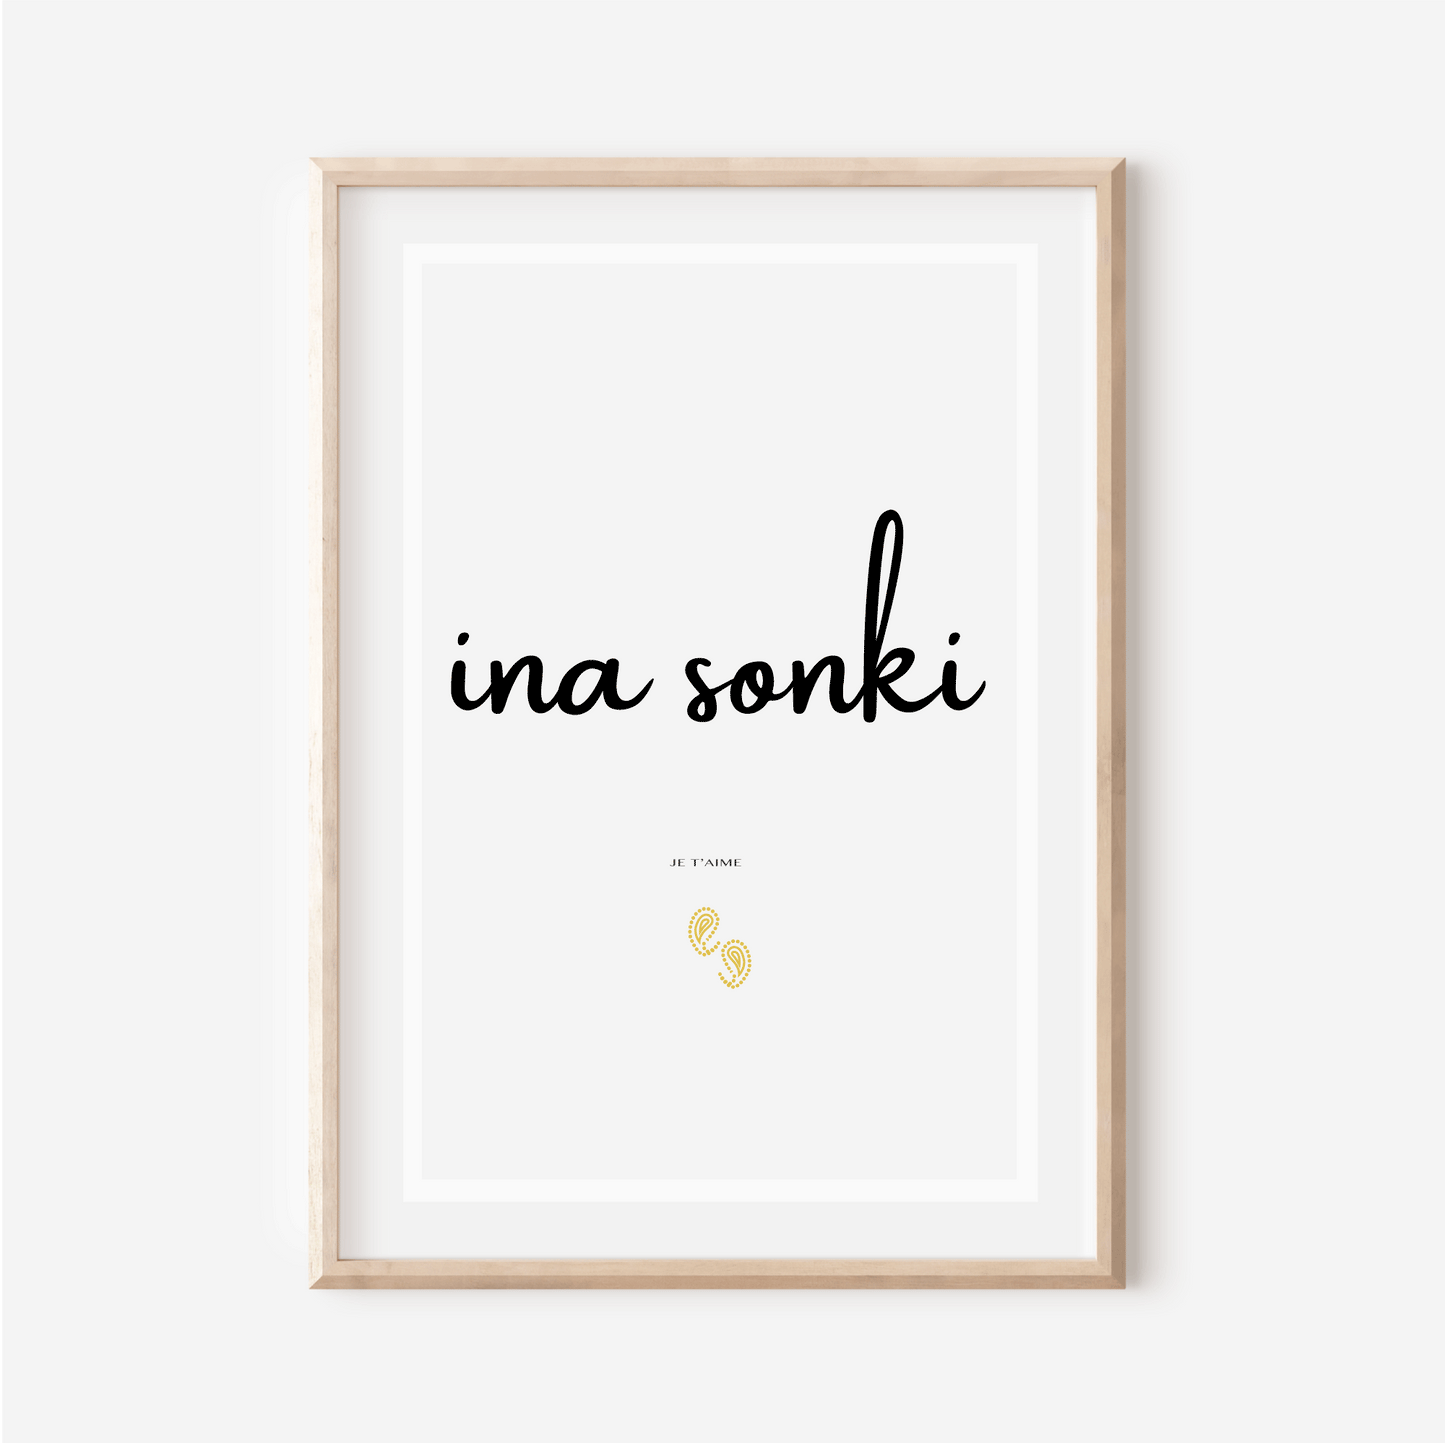 Affiche "Je t aime" en Haoussa - "Ina Sonki" (Adressé à une femme)